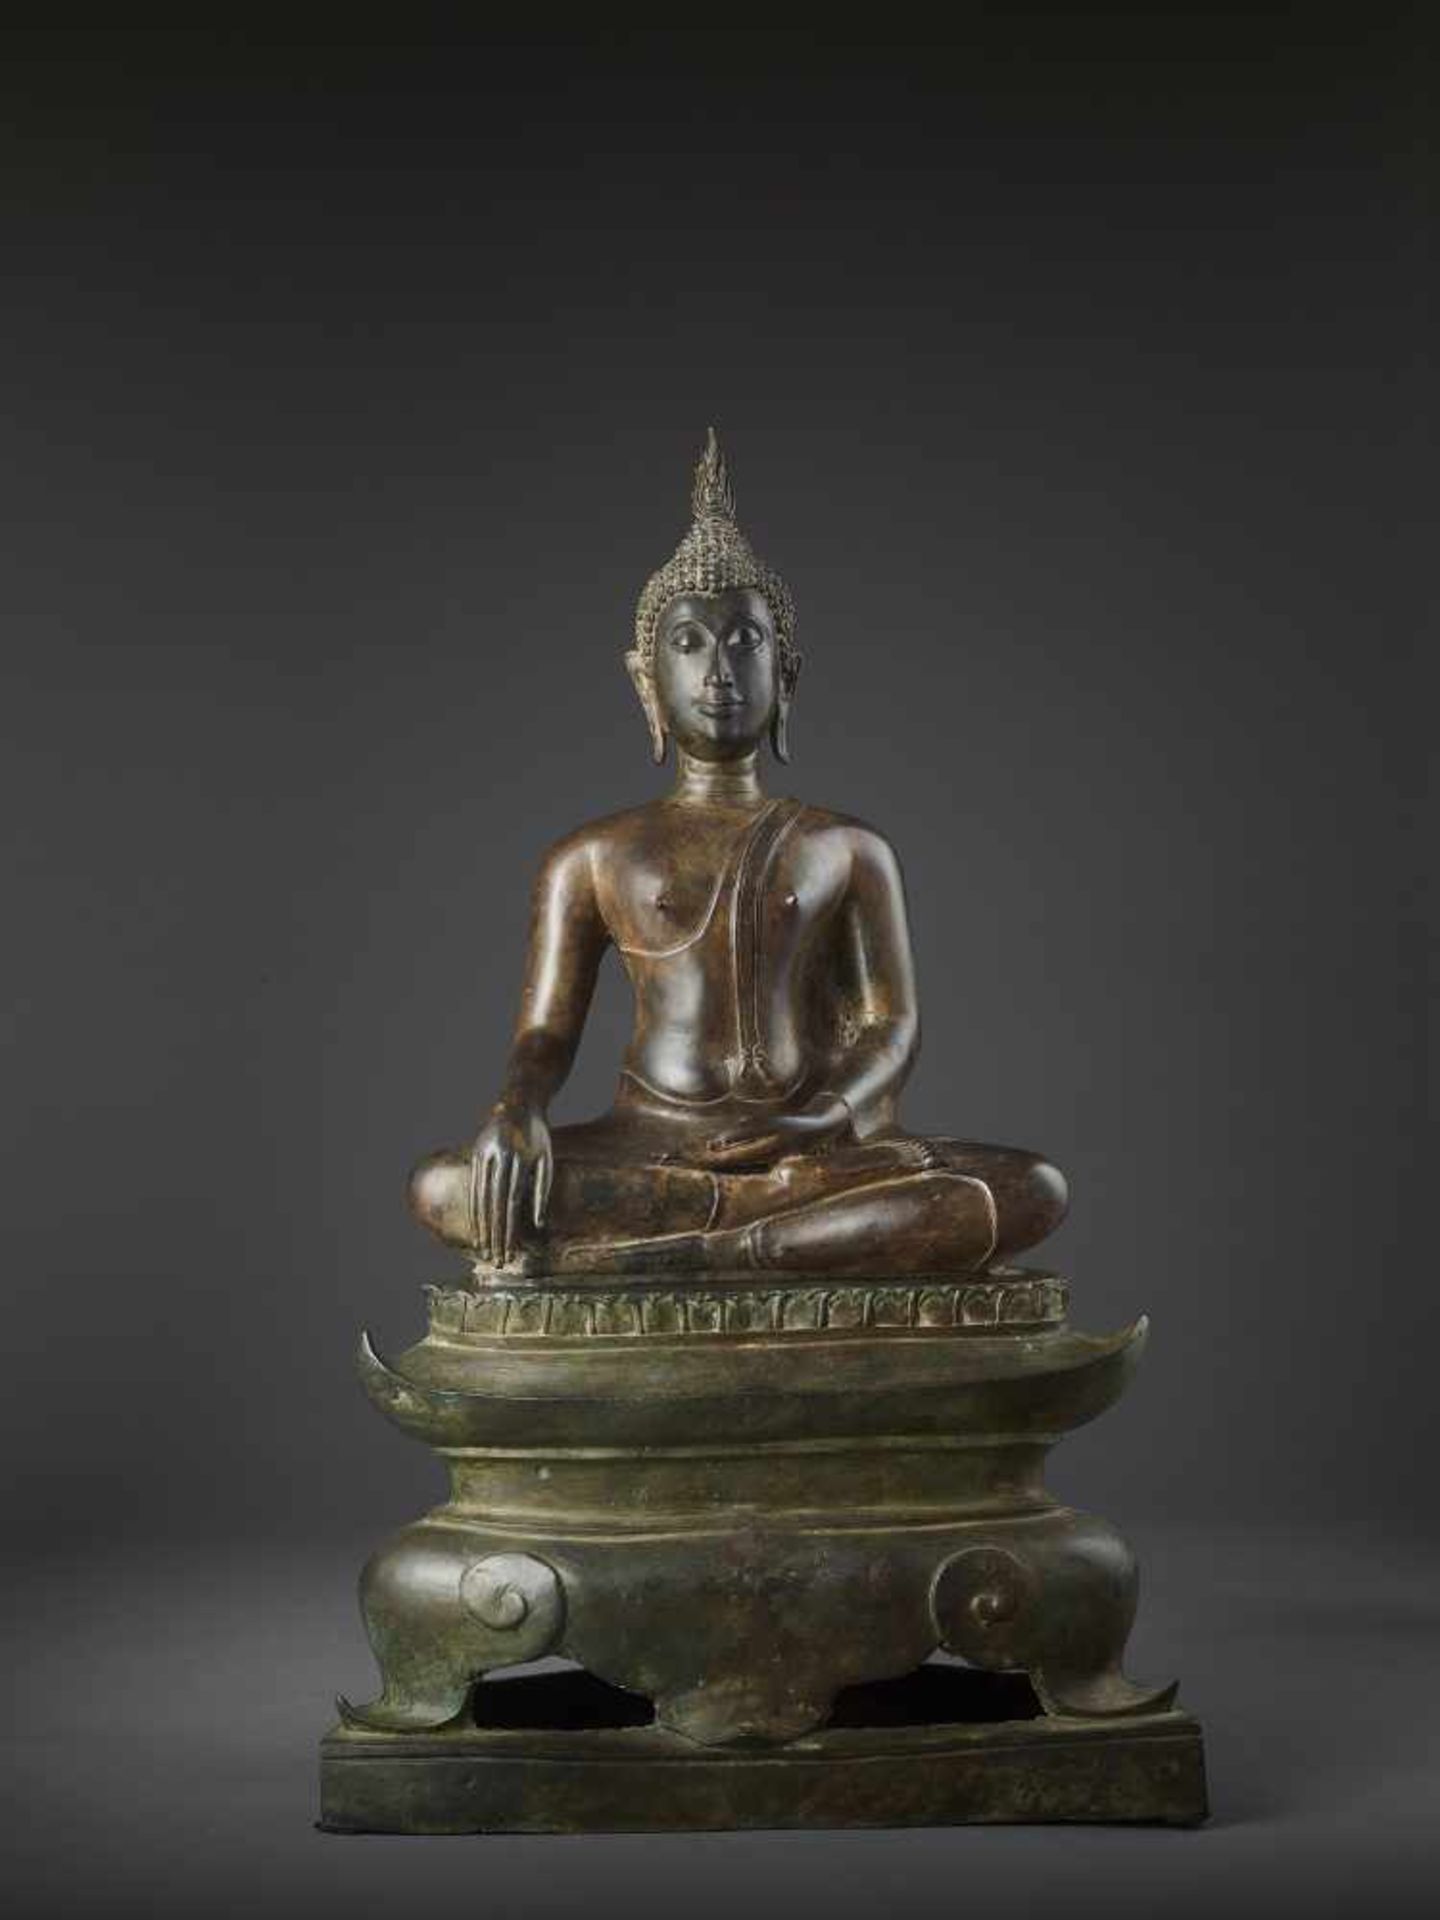 A LARGE SUKHOTHAI BUDDHA SHAKYAMUNIThailand, Sukhothai period, 15th-16th century. Cast bronze with - Image 4 of 12